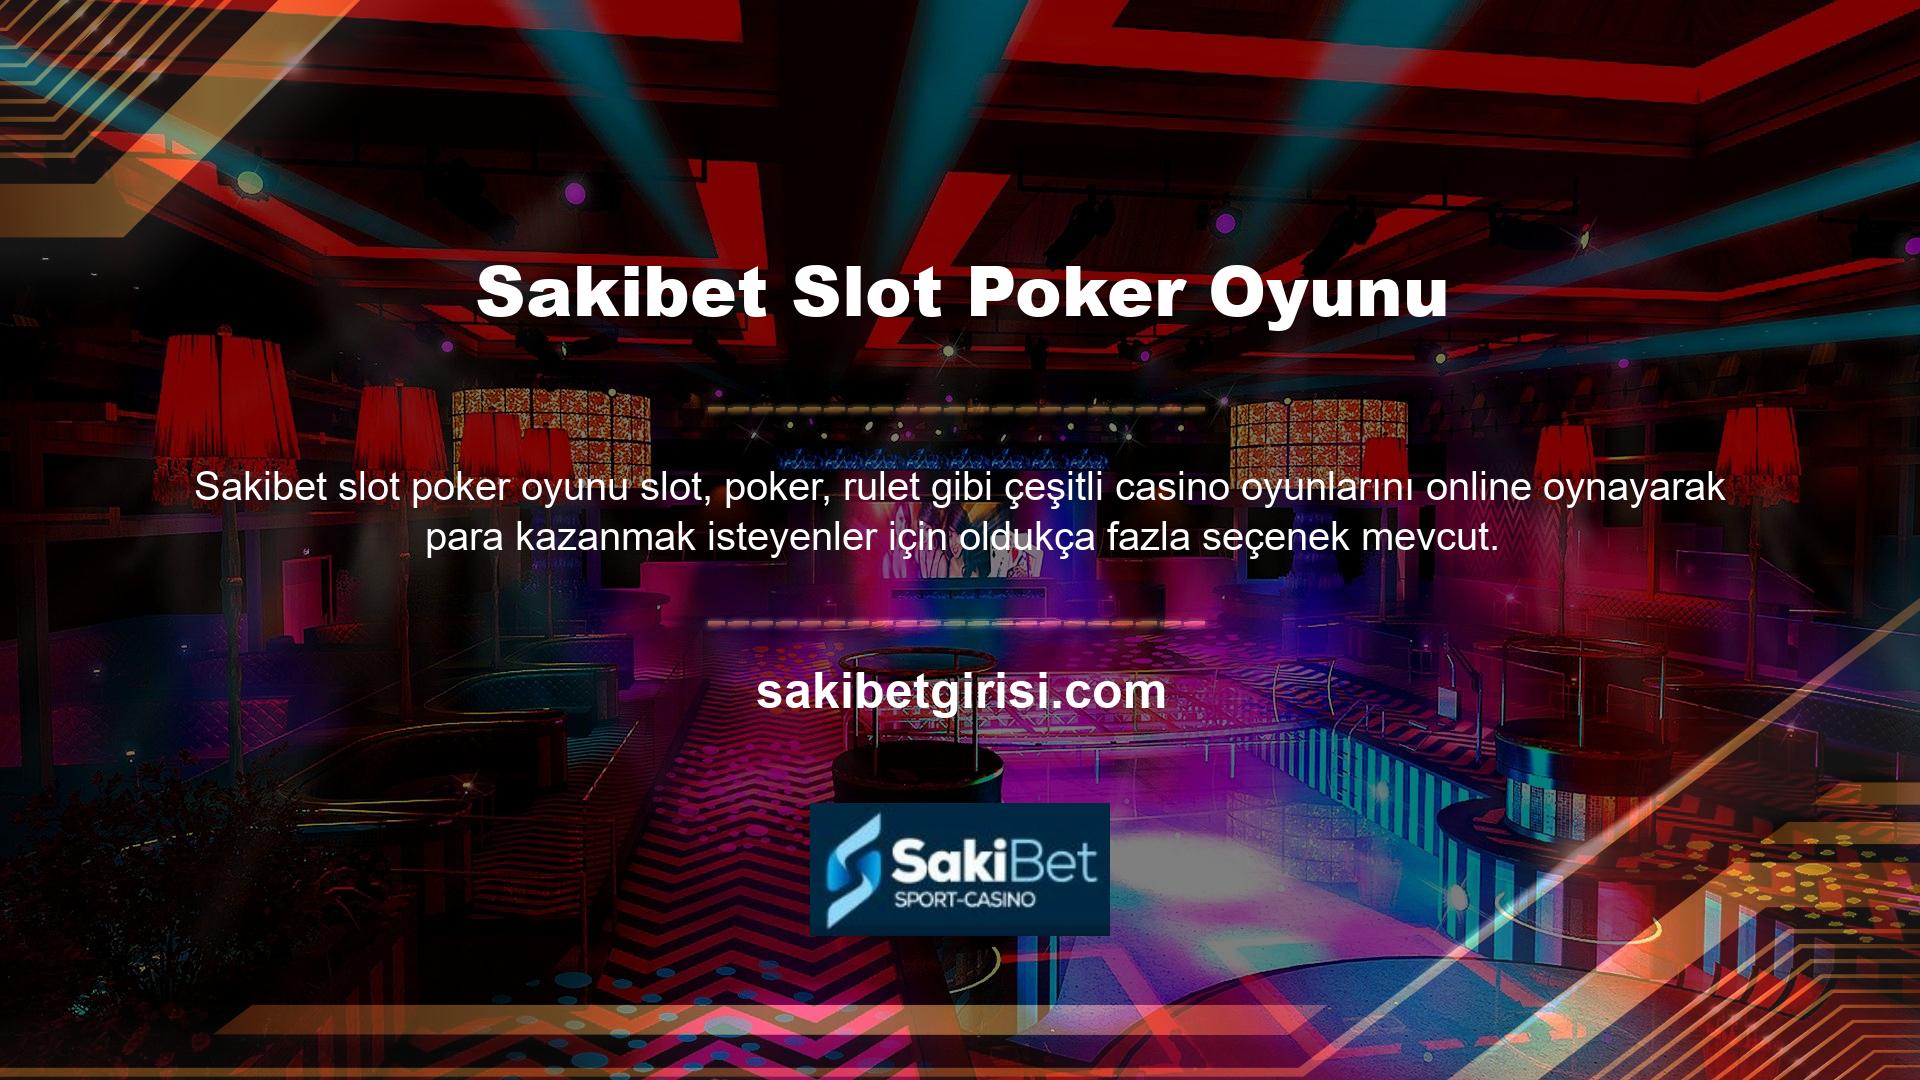 Site, kullanıcıların canlı bahis oynayabileceği ve canlı casinoda oynayabileceği 7/24 kesintisiz hizmet sunmaktadır